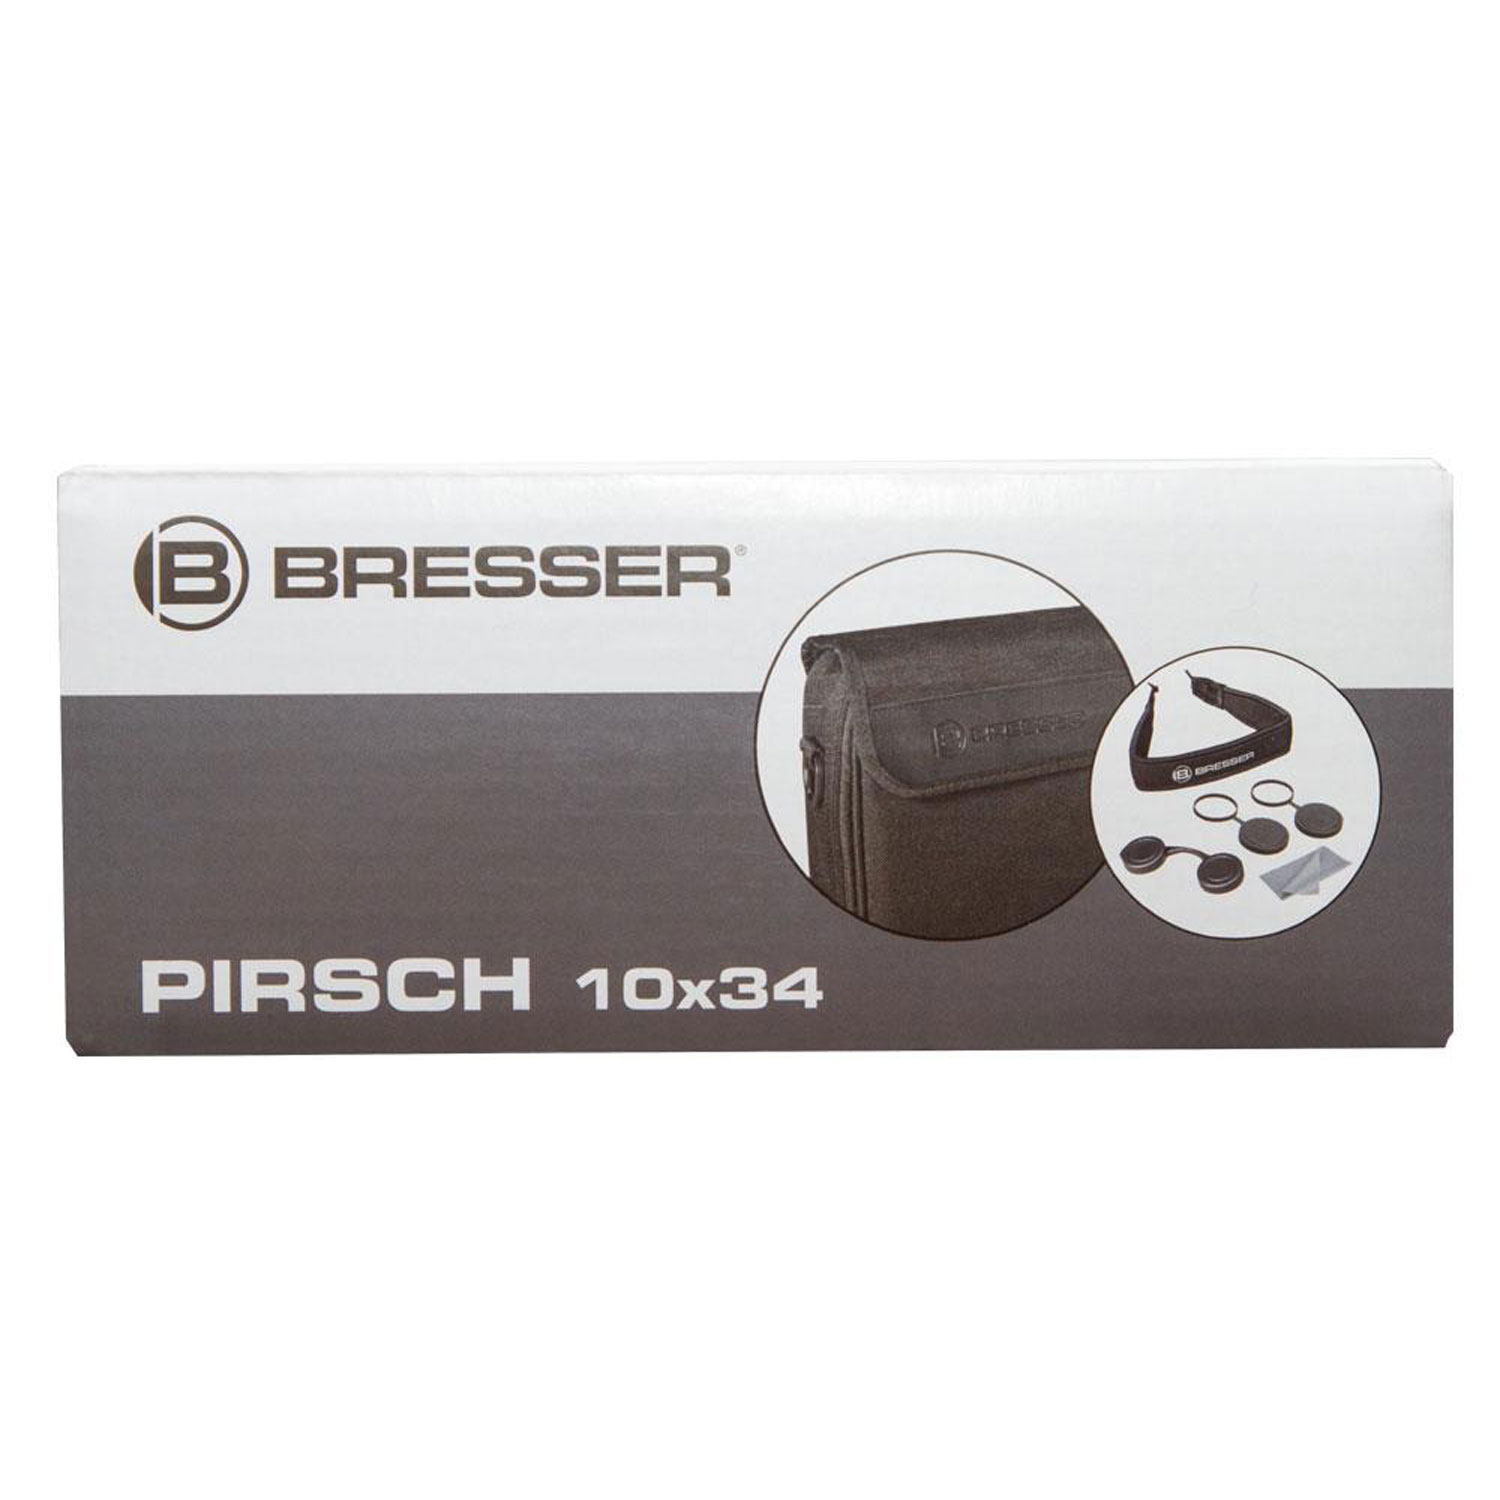 Бинокль Bresser Pirsch 10x34 - фото 13